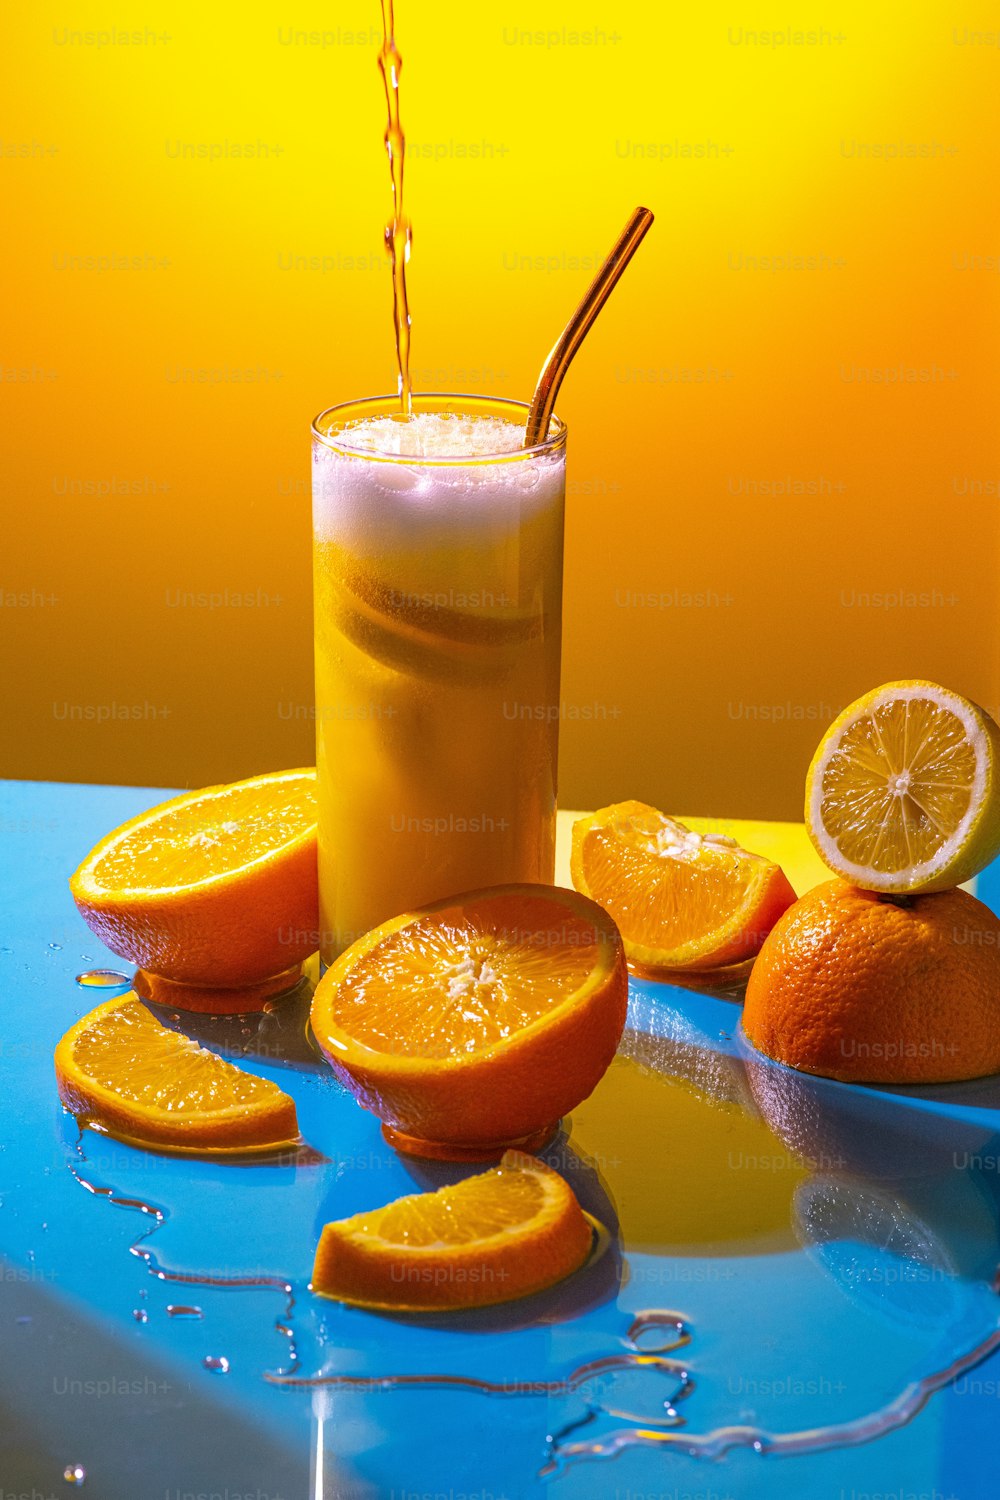 얇게 썬 오렌지가있는 테이블에 오렌지 주스 한 잔